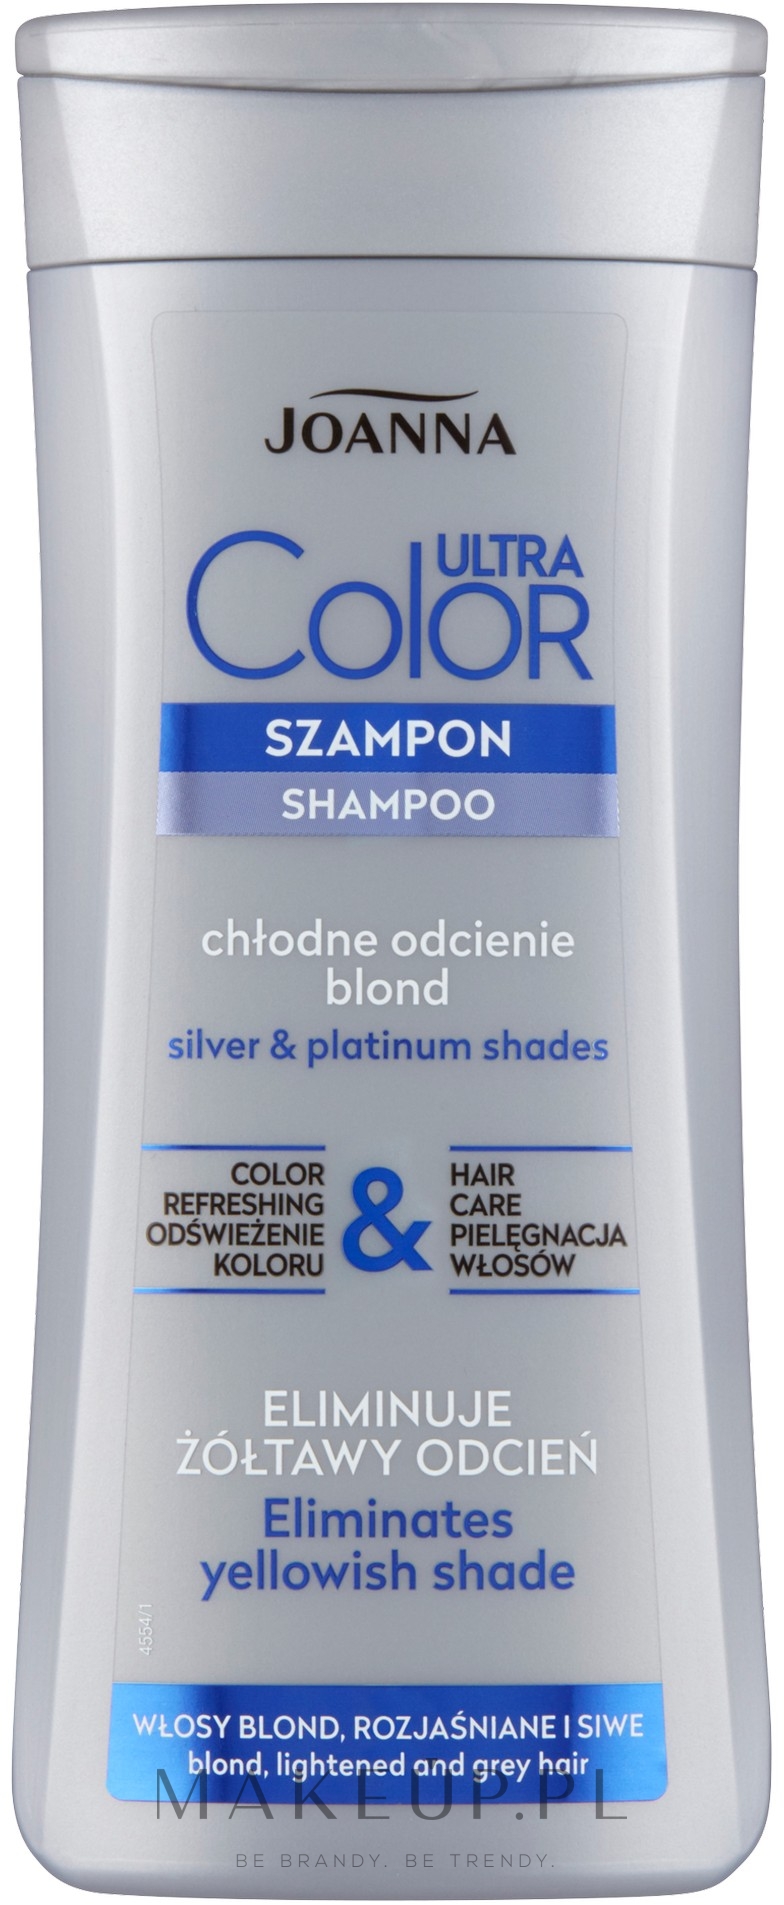 szampon do włosów rozjaśnianych i siwych joanna jak używać